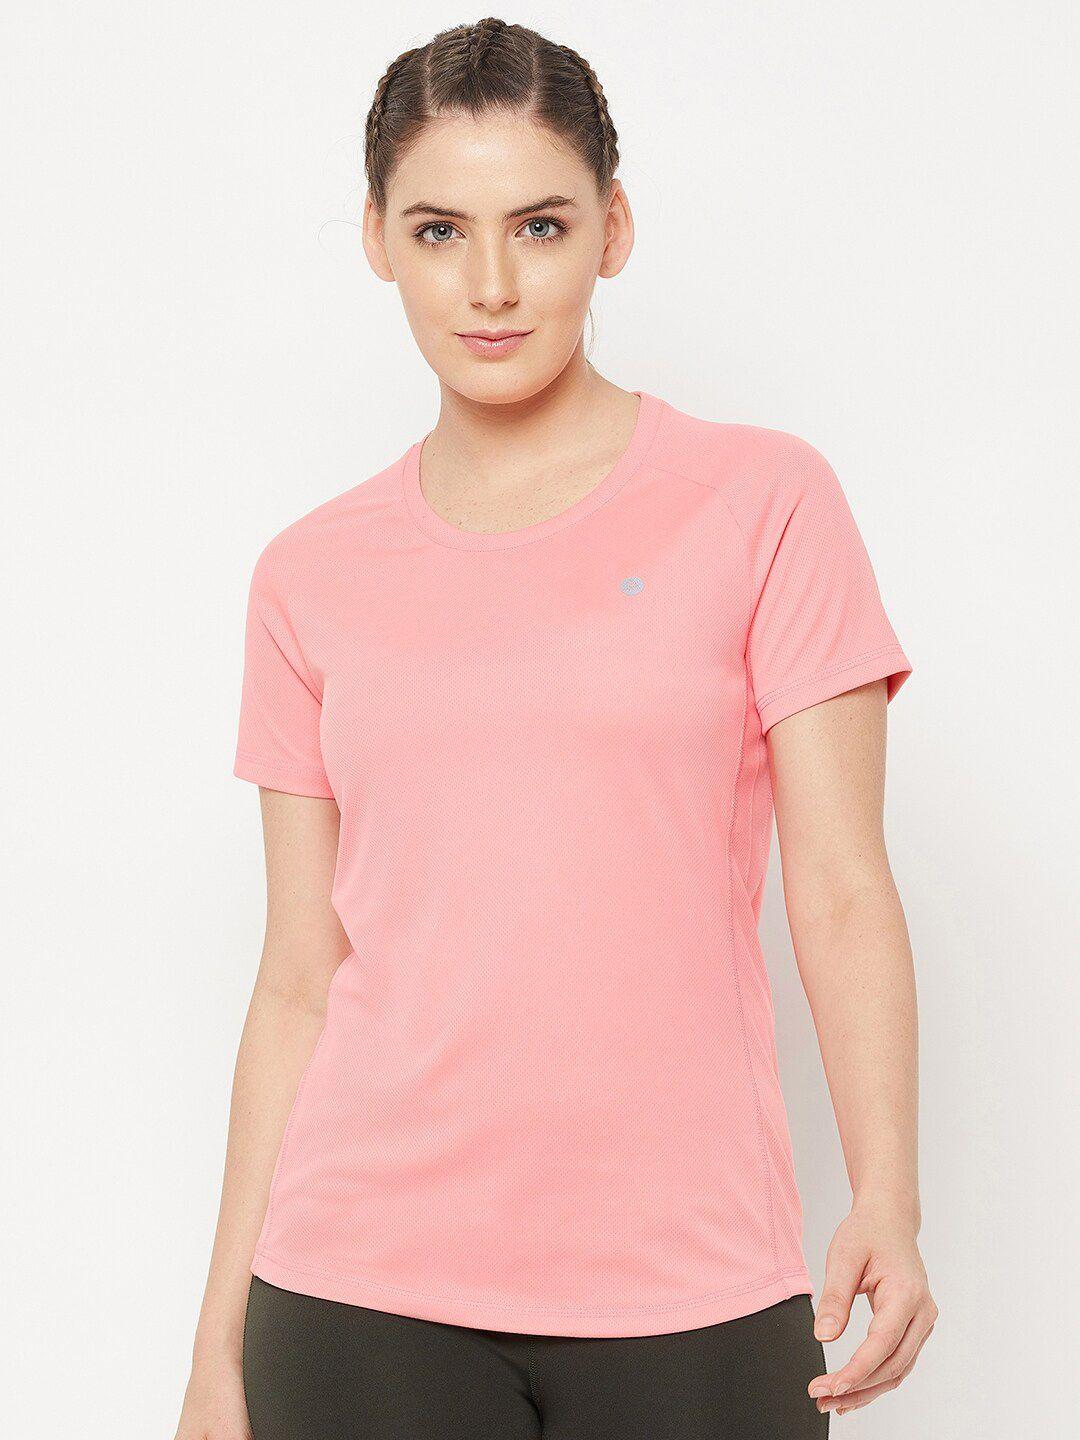 athlisis women pink round neck slim fit t-shirt